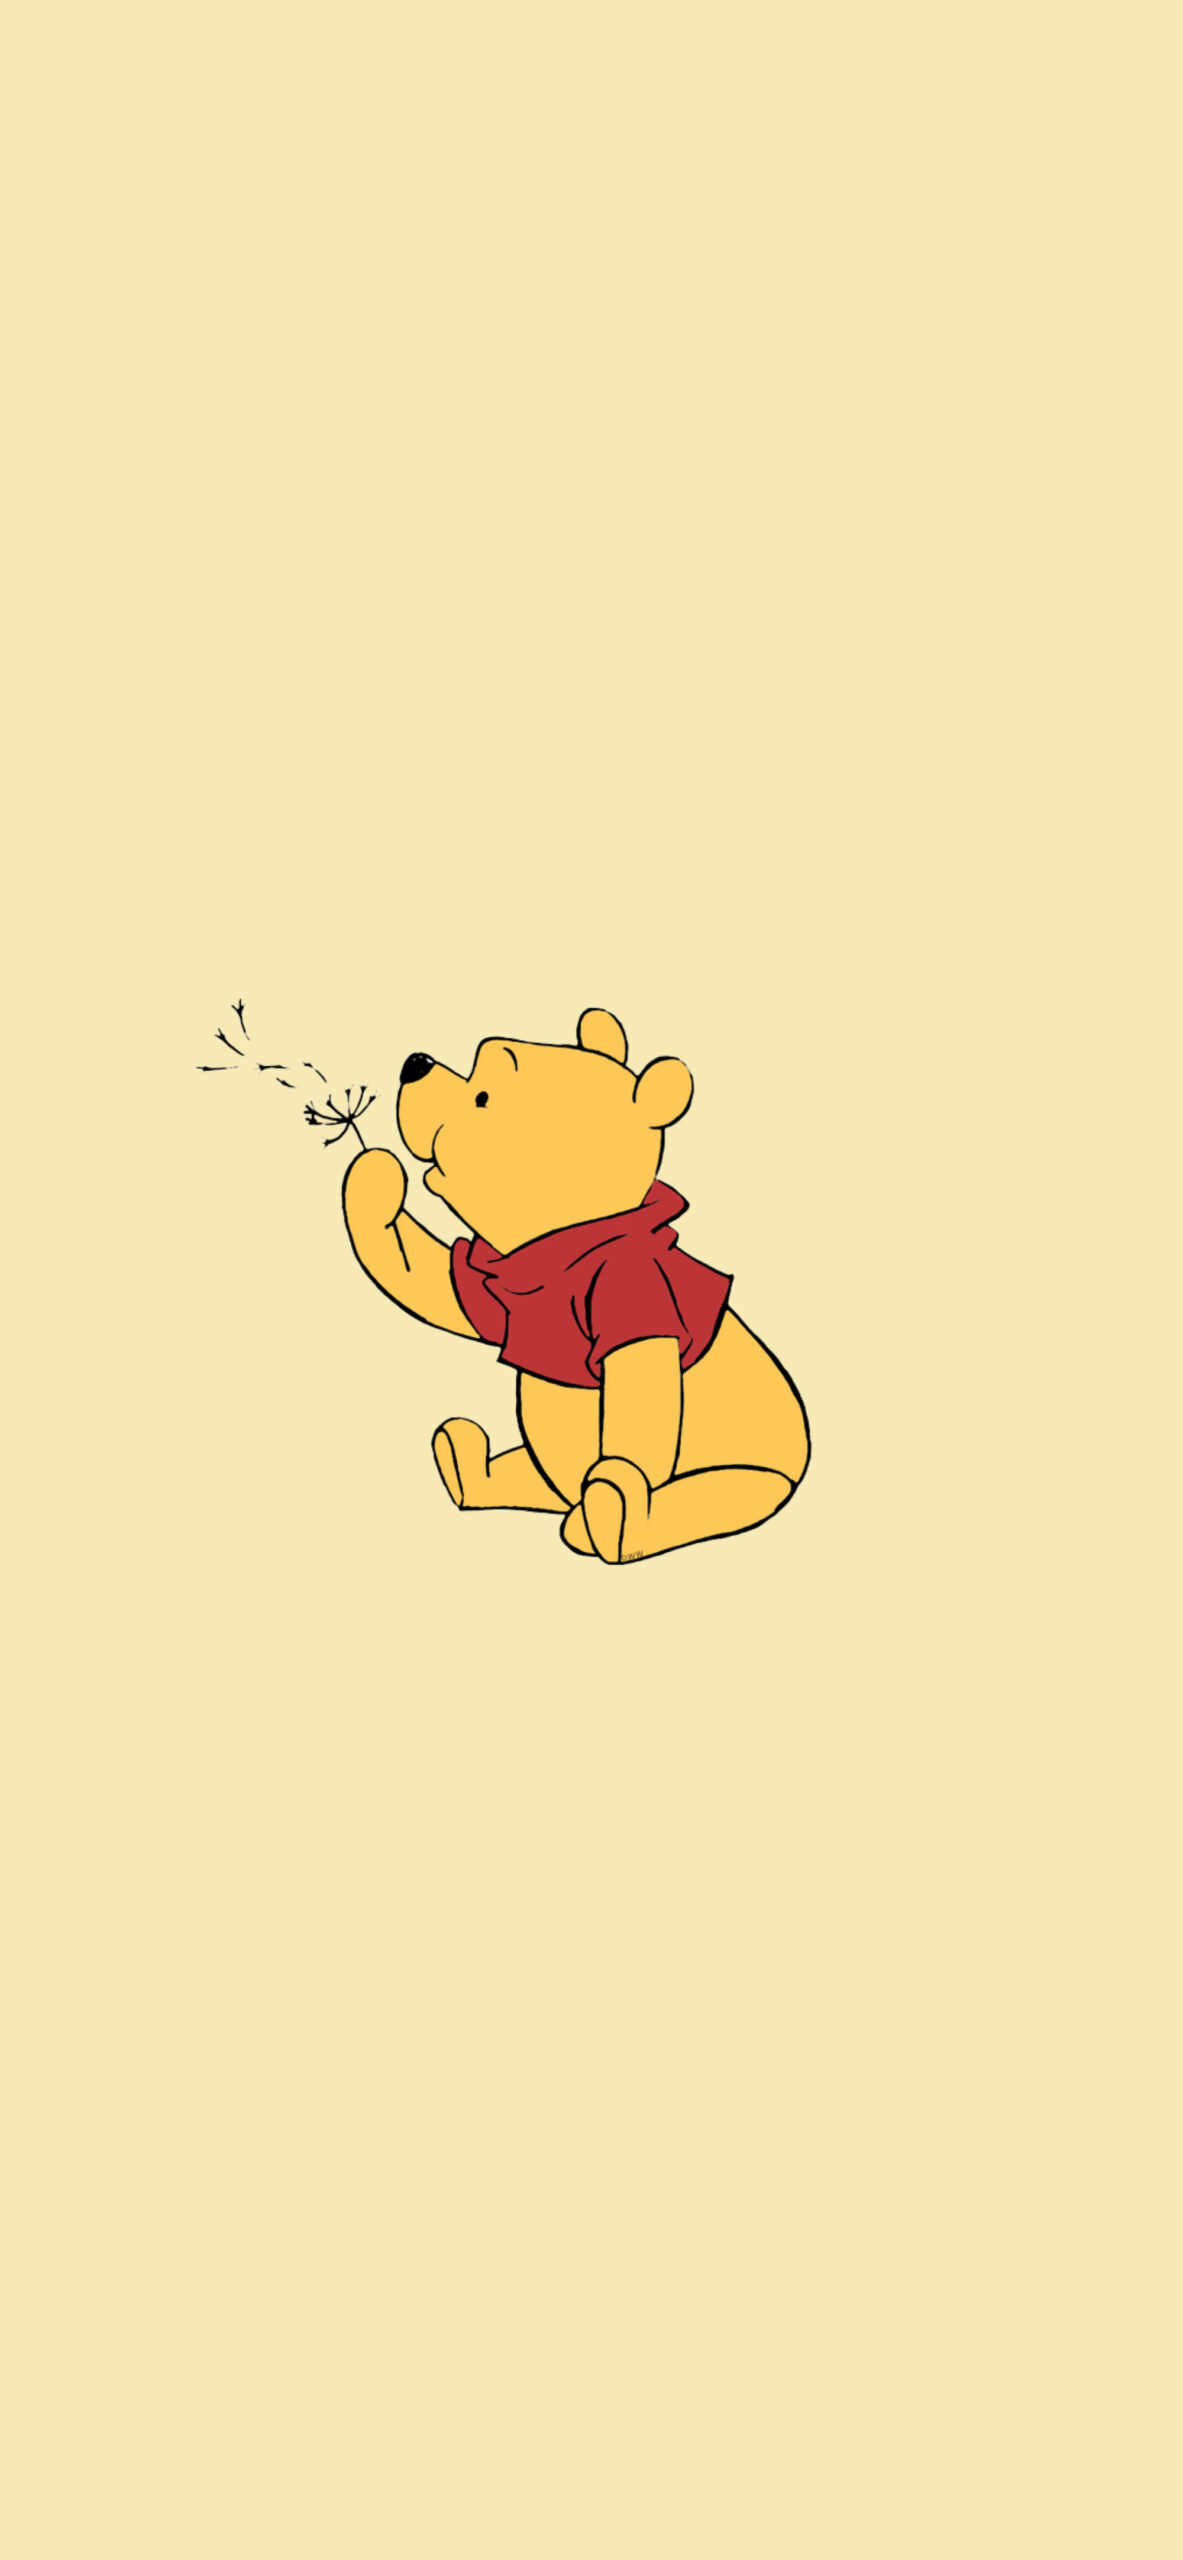 iDesign | Hành trình 90 năm của Winnie the Pooh: Từ bản phác họa trở thành  biểu tượng của Disney